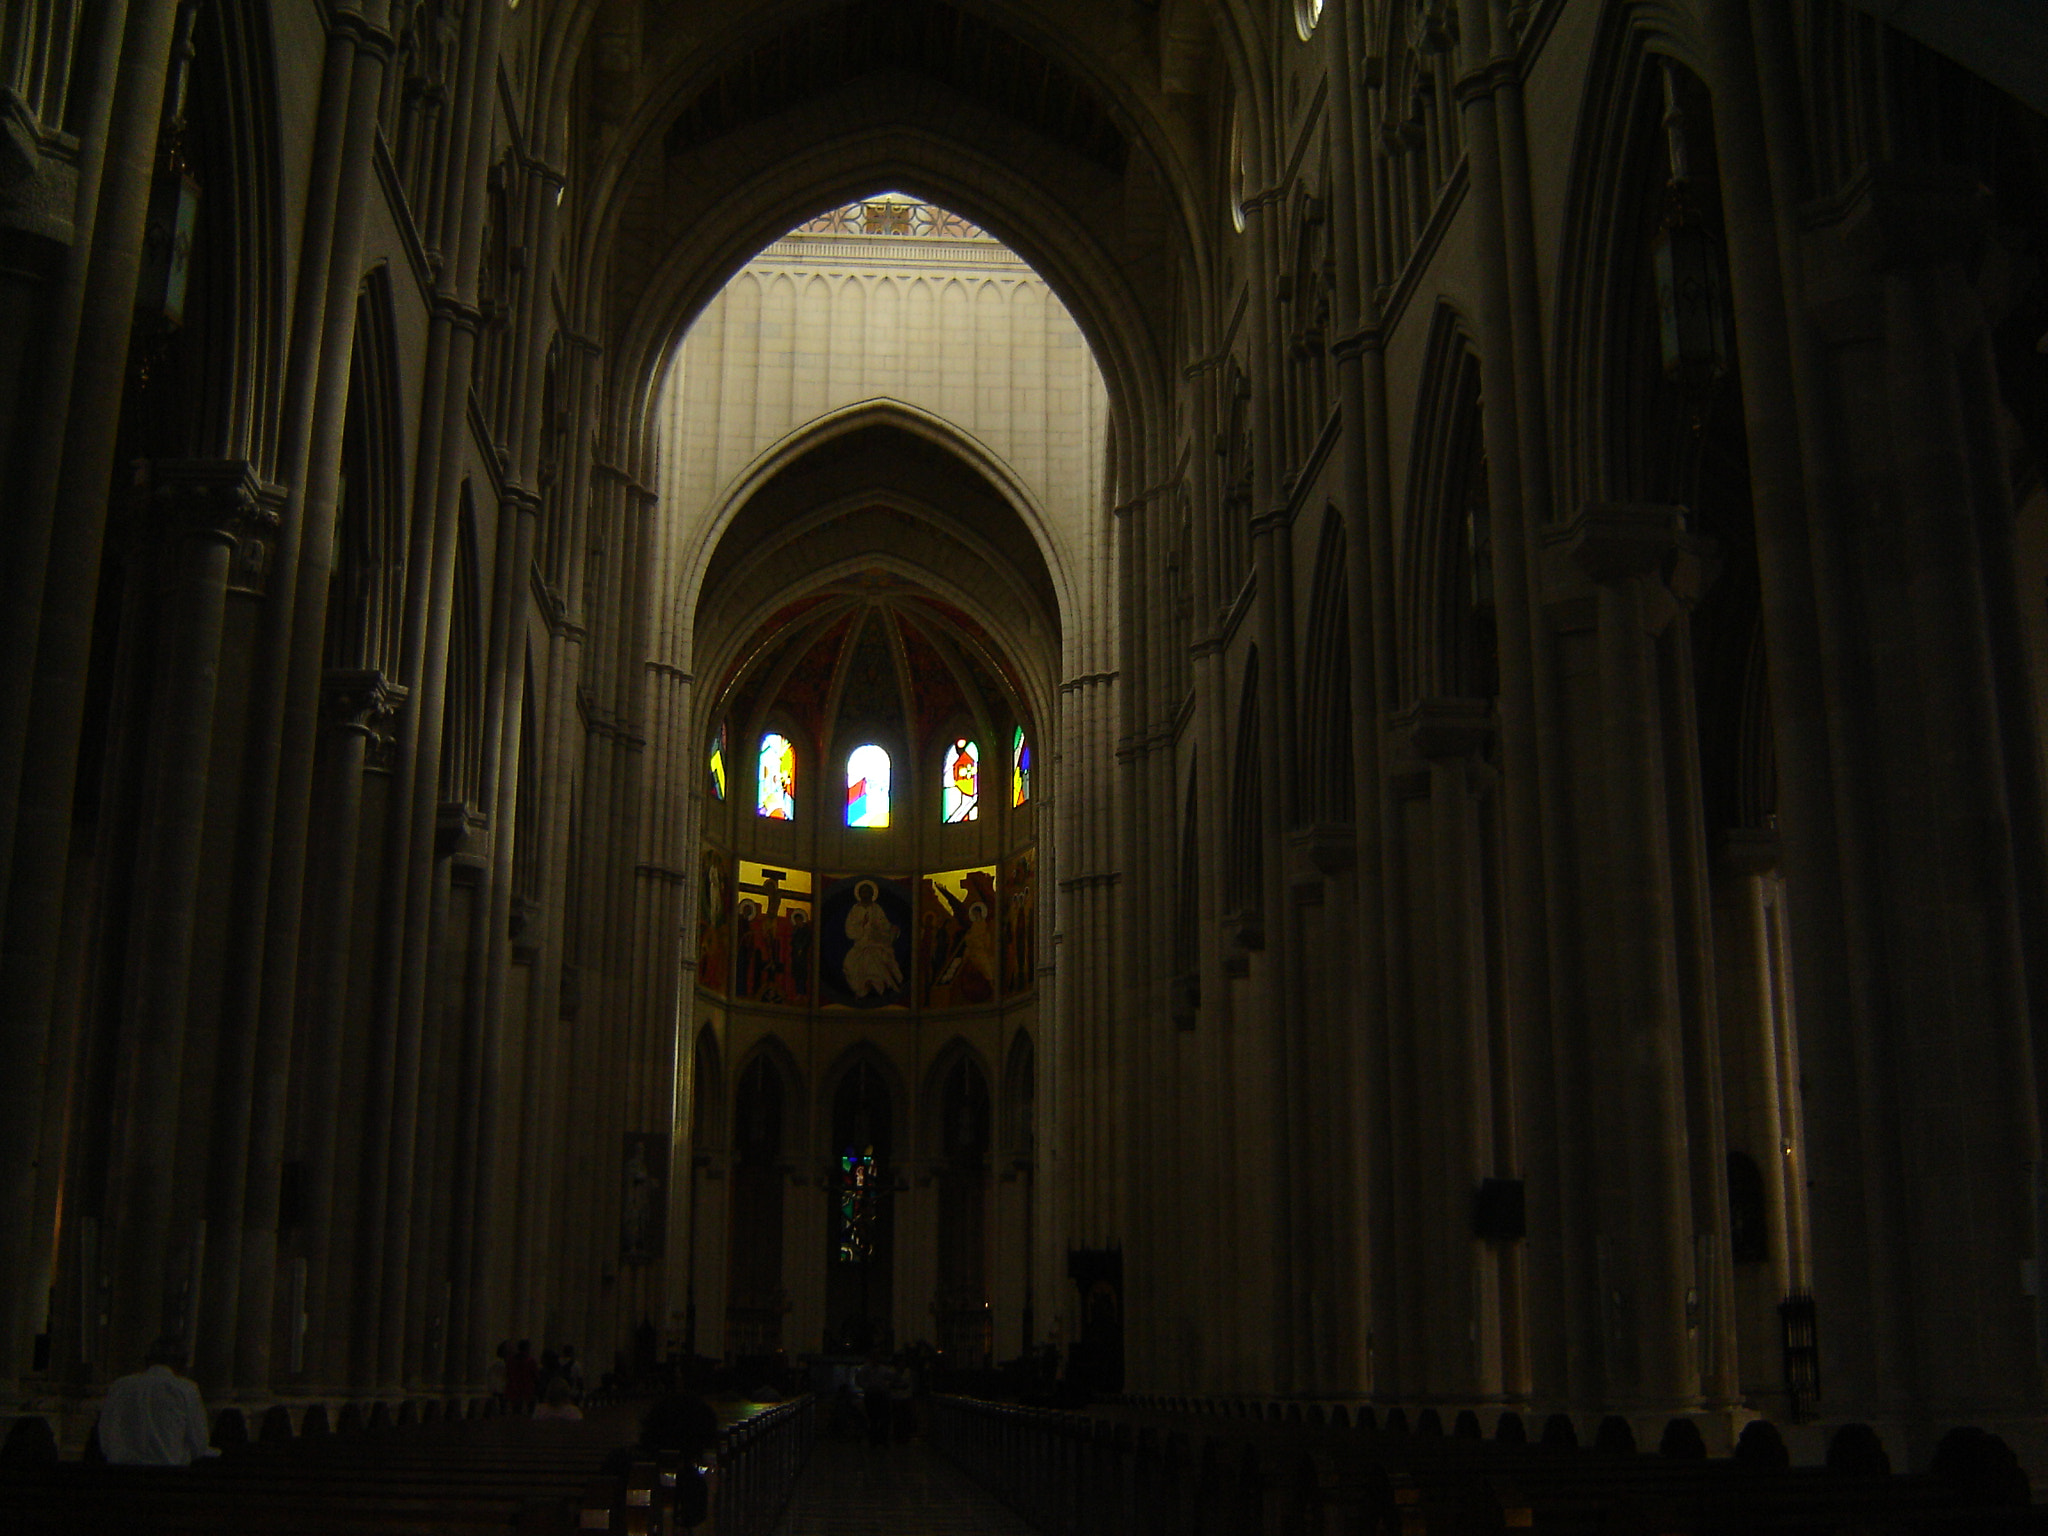 Sony DSC-P73 sample photo. Interior catedral almudena españa photography